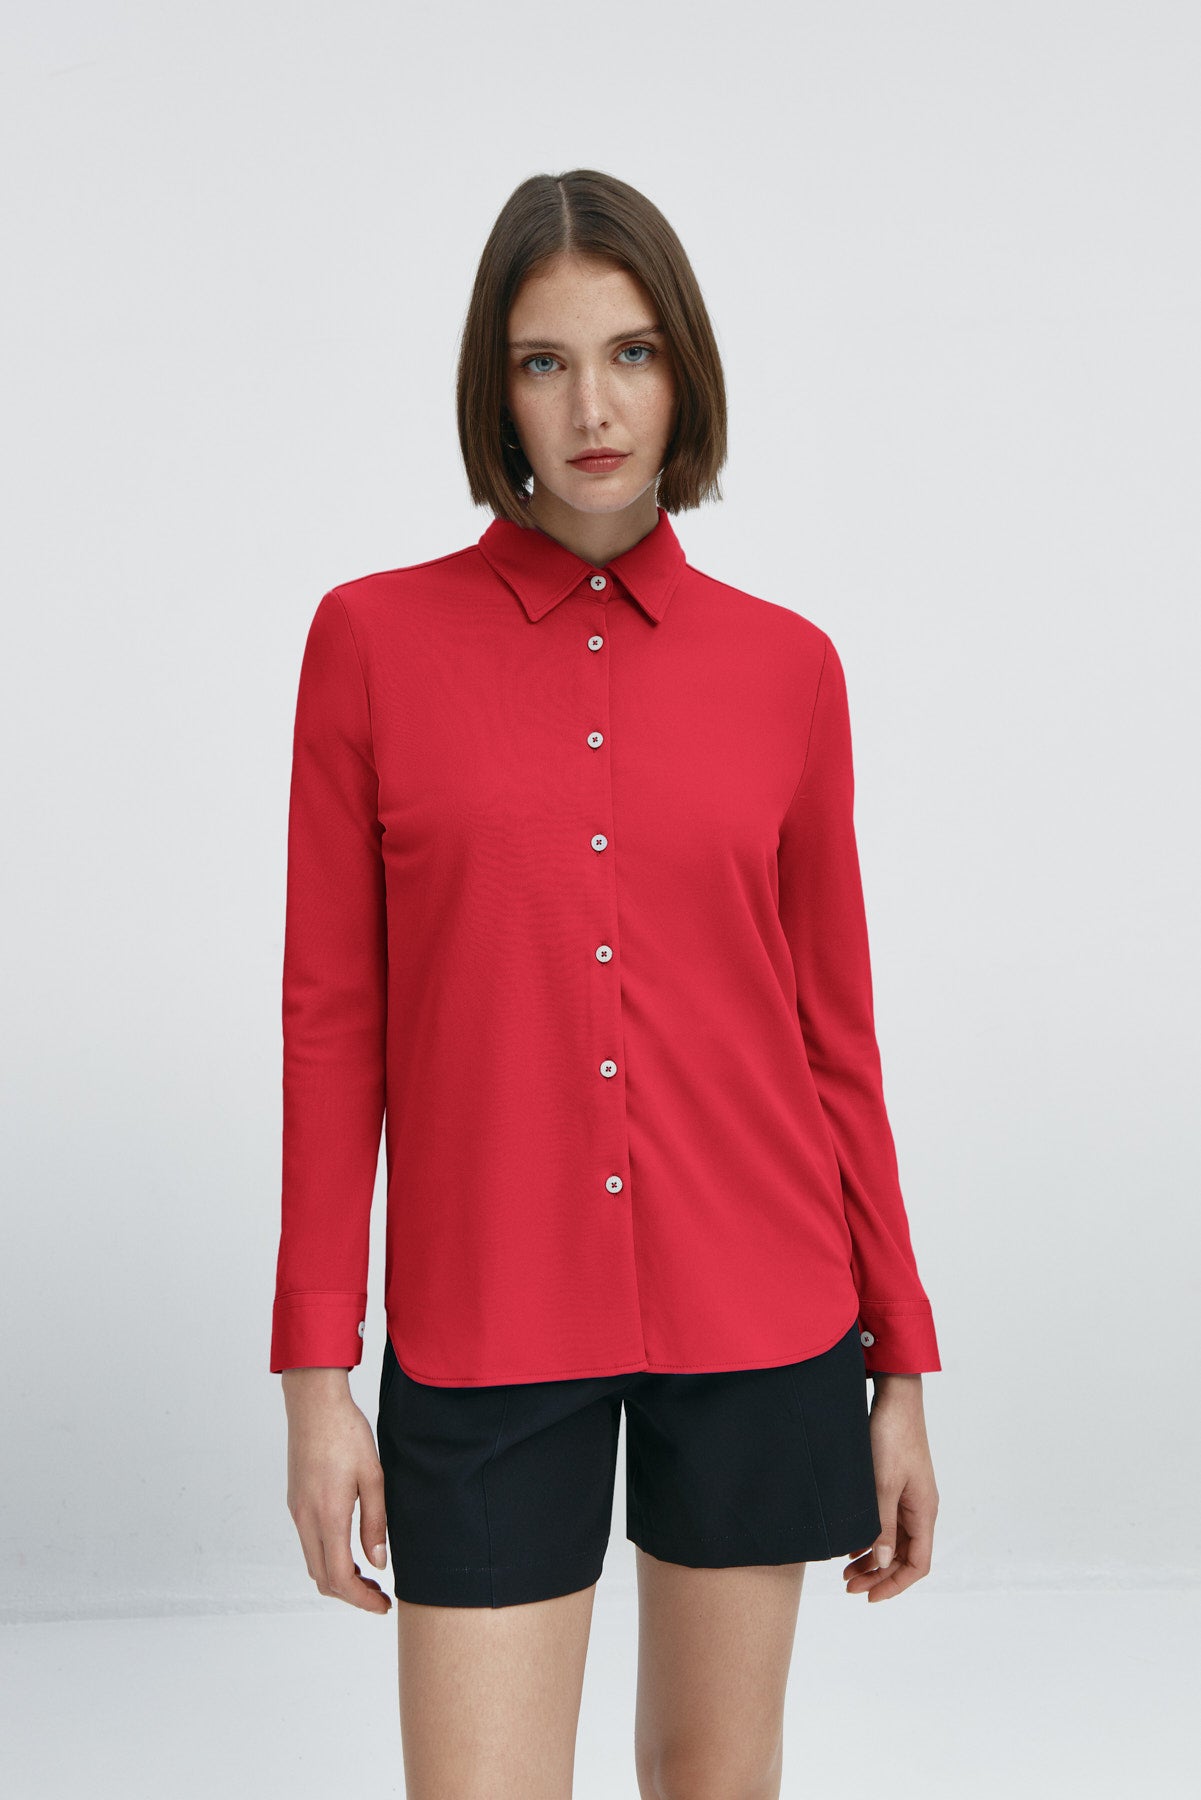 Camisa rojo atlanta oversize de Sepiia, elegante y resistente a manchas y arrugas. Foto frente